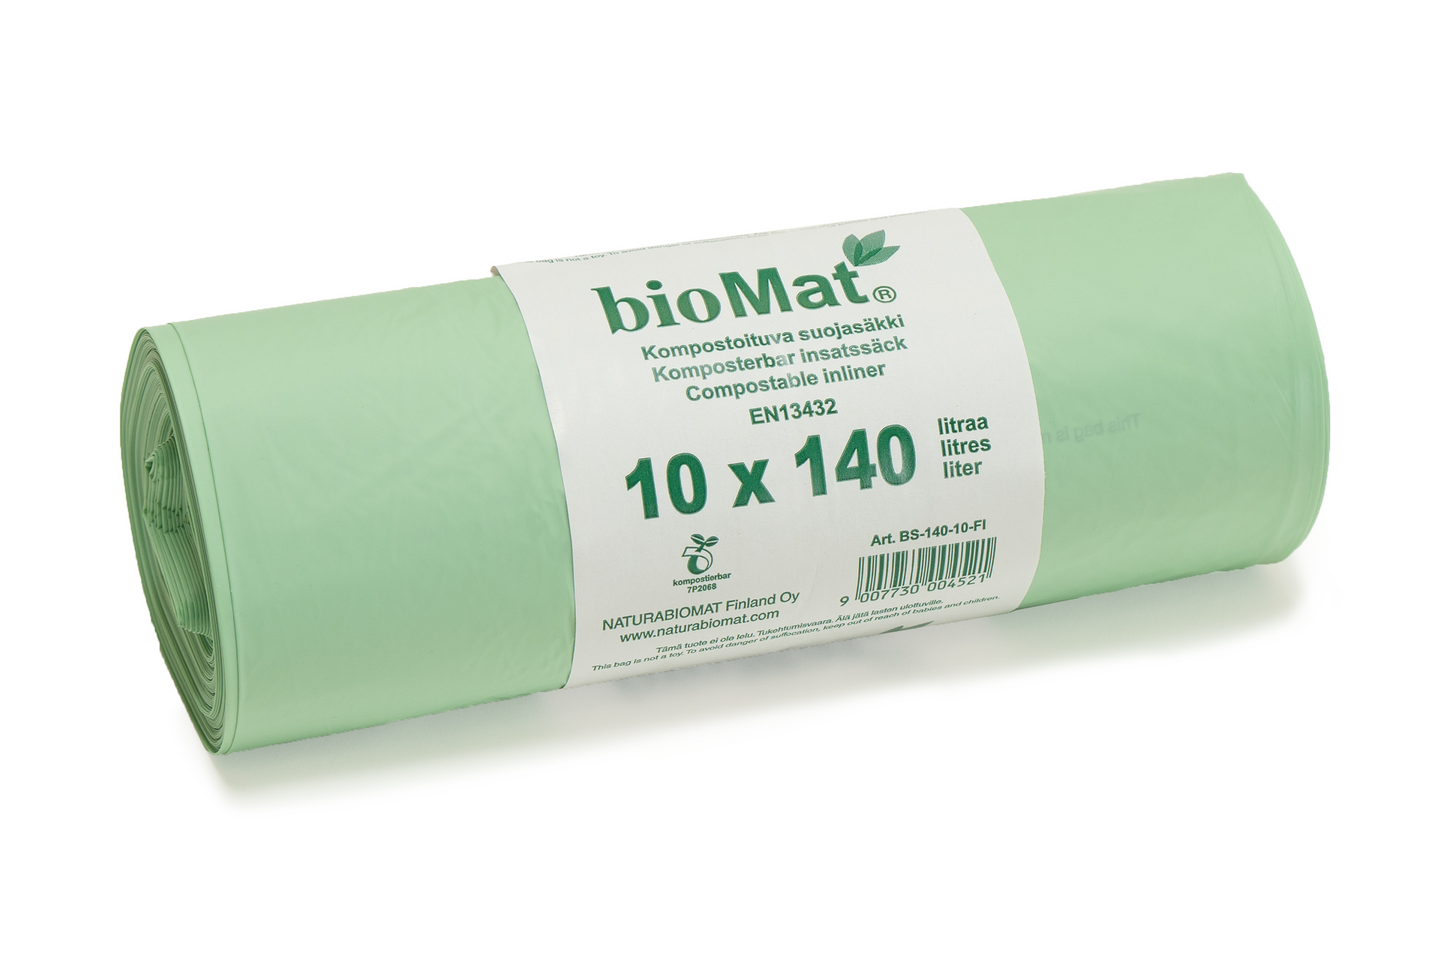 BioMat biojätepussi 85x140cm 140l 10kpl